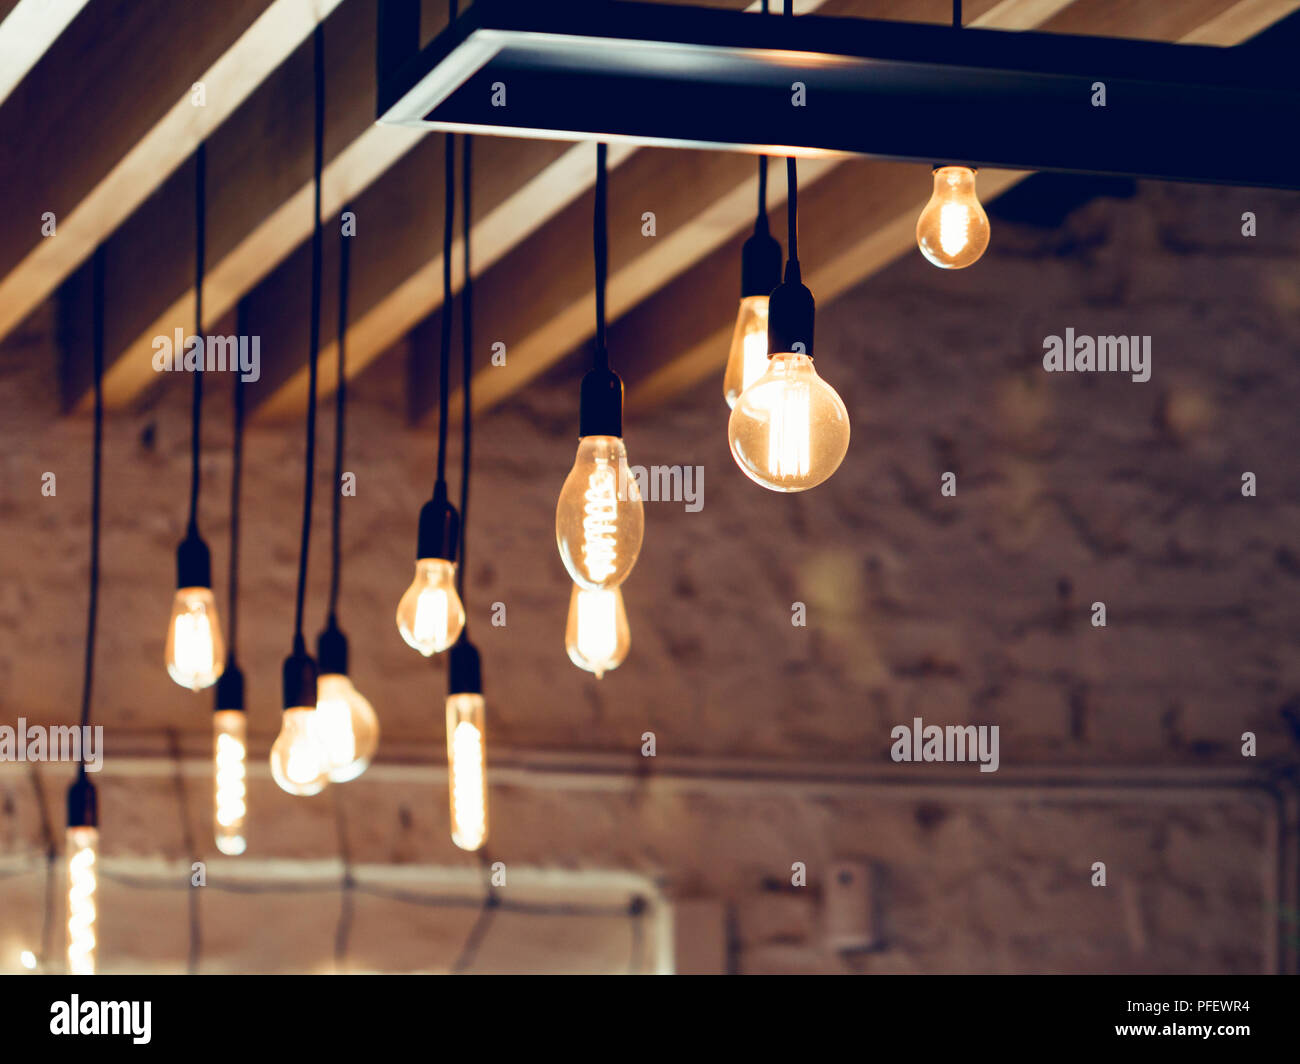 Vintage hängenden Lampen an der Decke in einem Dachboden Stockfotografie -  Alamy